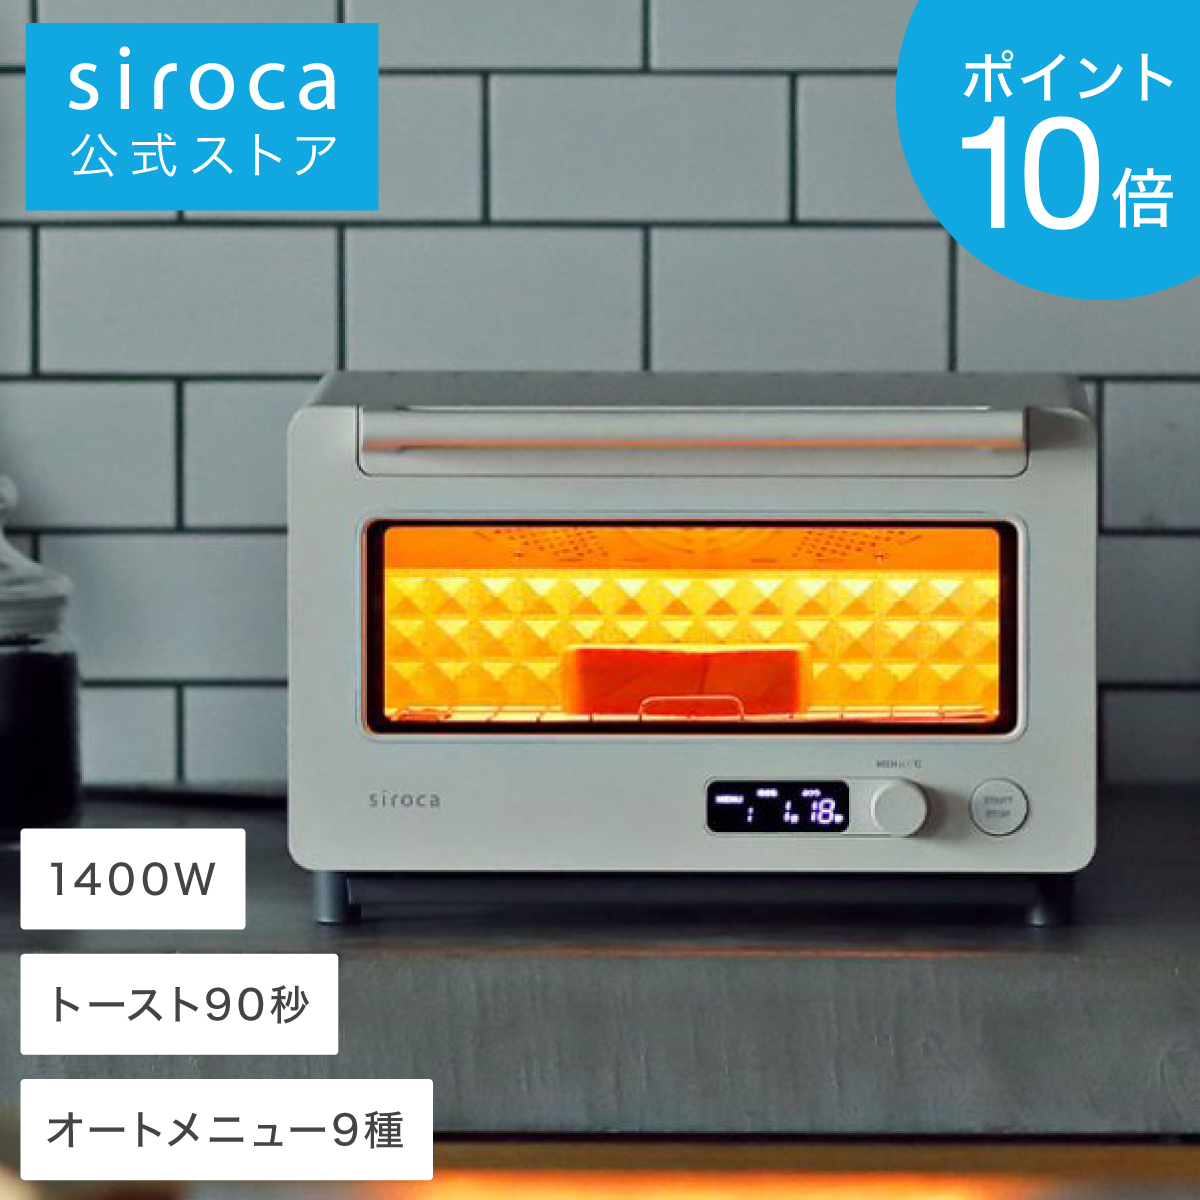 siroca すばやきトースター ST-2D351 ホワイト ブラック オーブントースター トースター おしゃれ コンパクト 小型  ギフト プレゼント 90秒で極上トースト 炎風テクノロジー かんたん 操作 かしこい オートモード クロワッサン